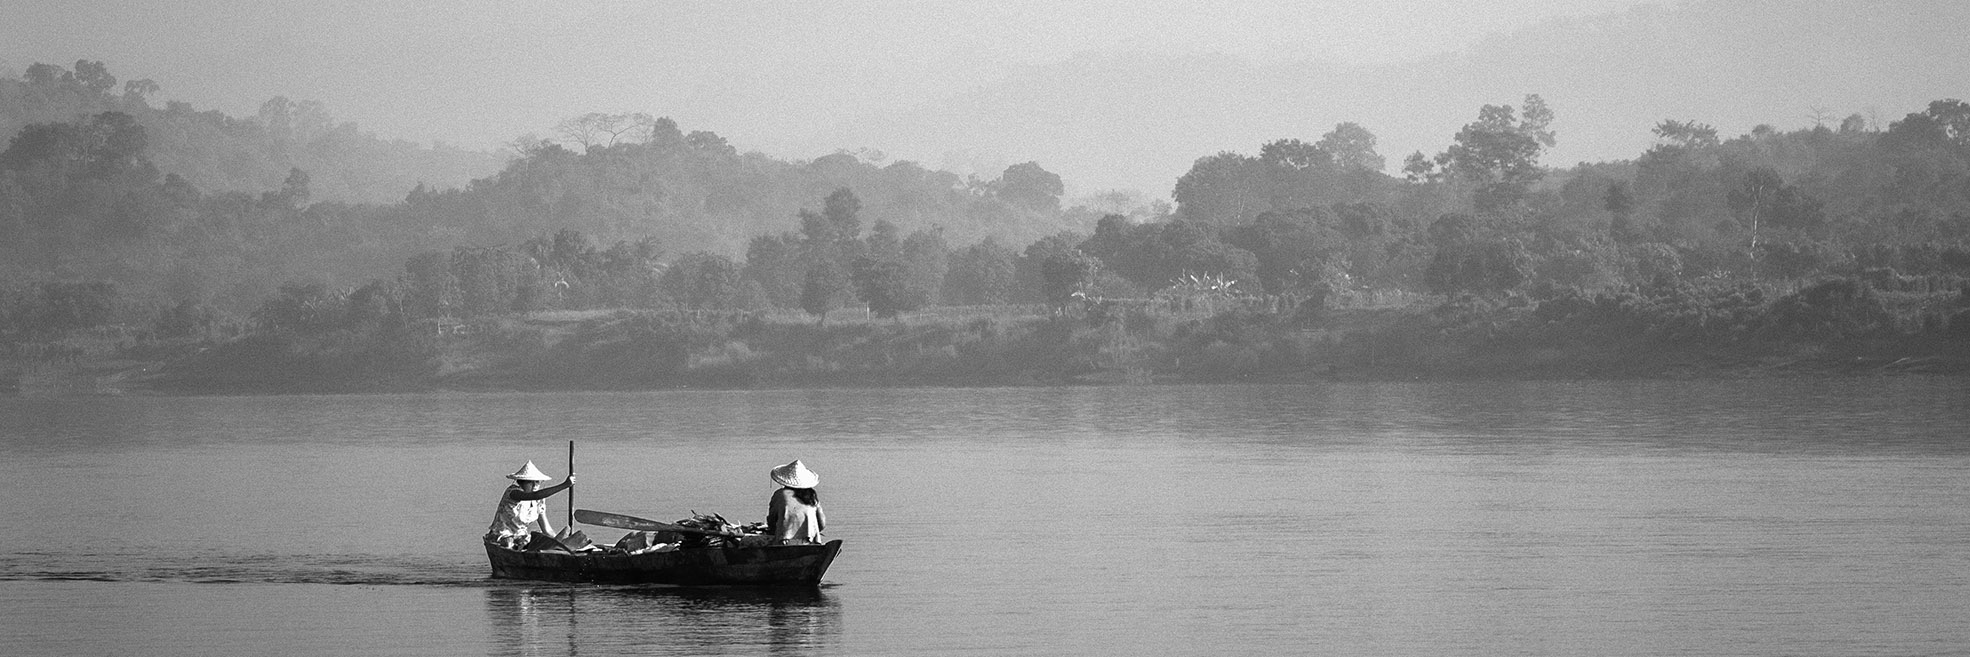 Boat on the Kaladan River in Myanmar